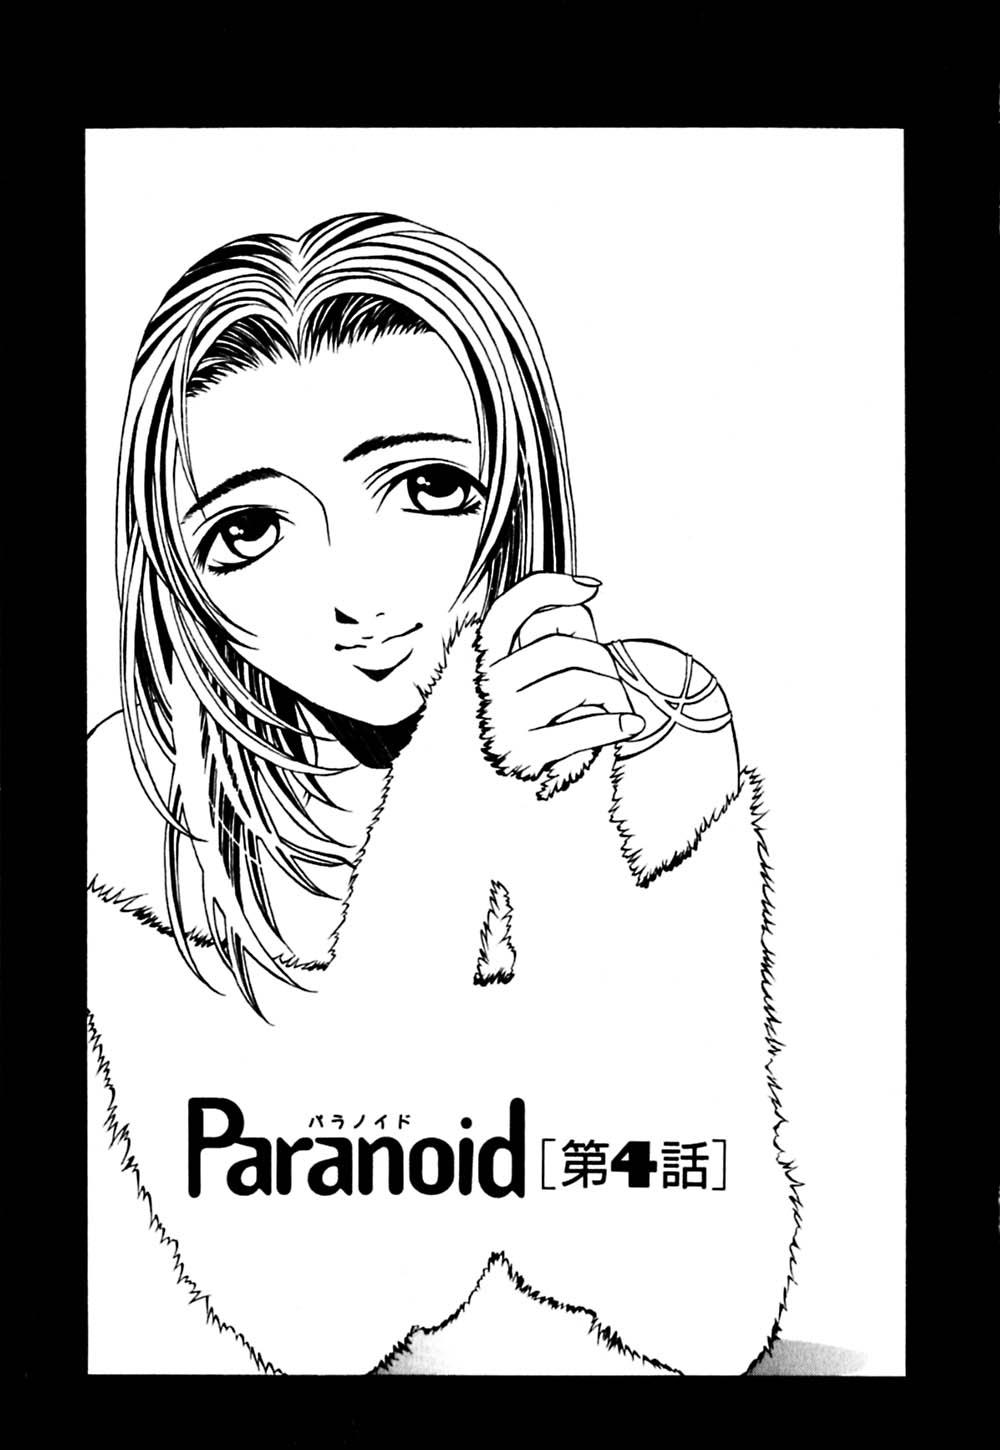 Paranoid 83